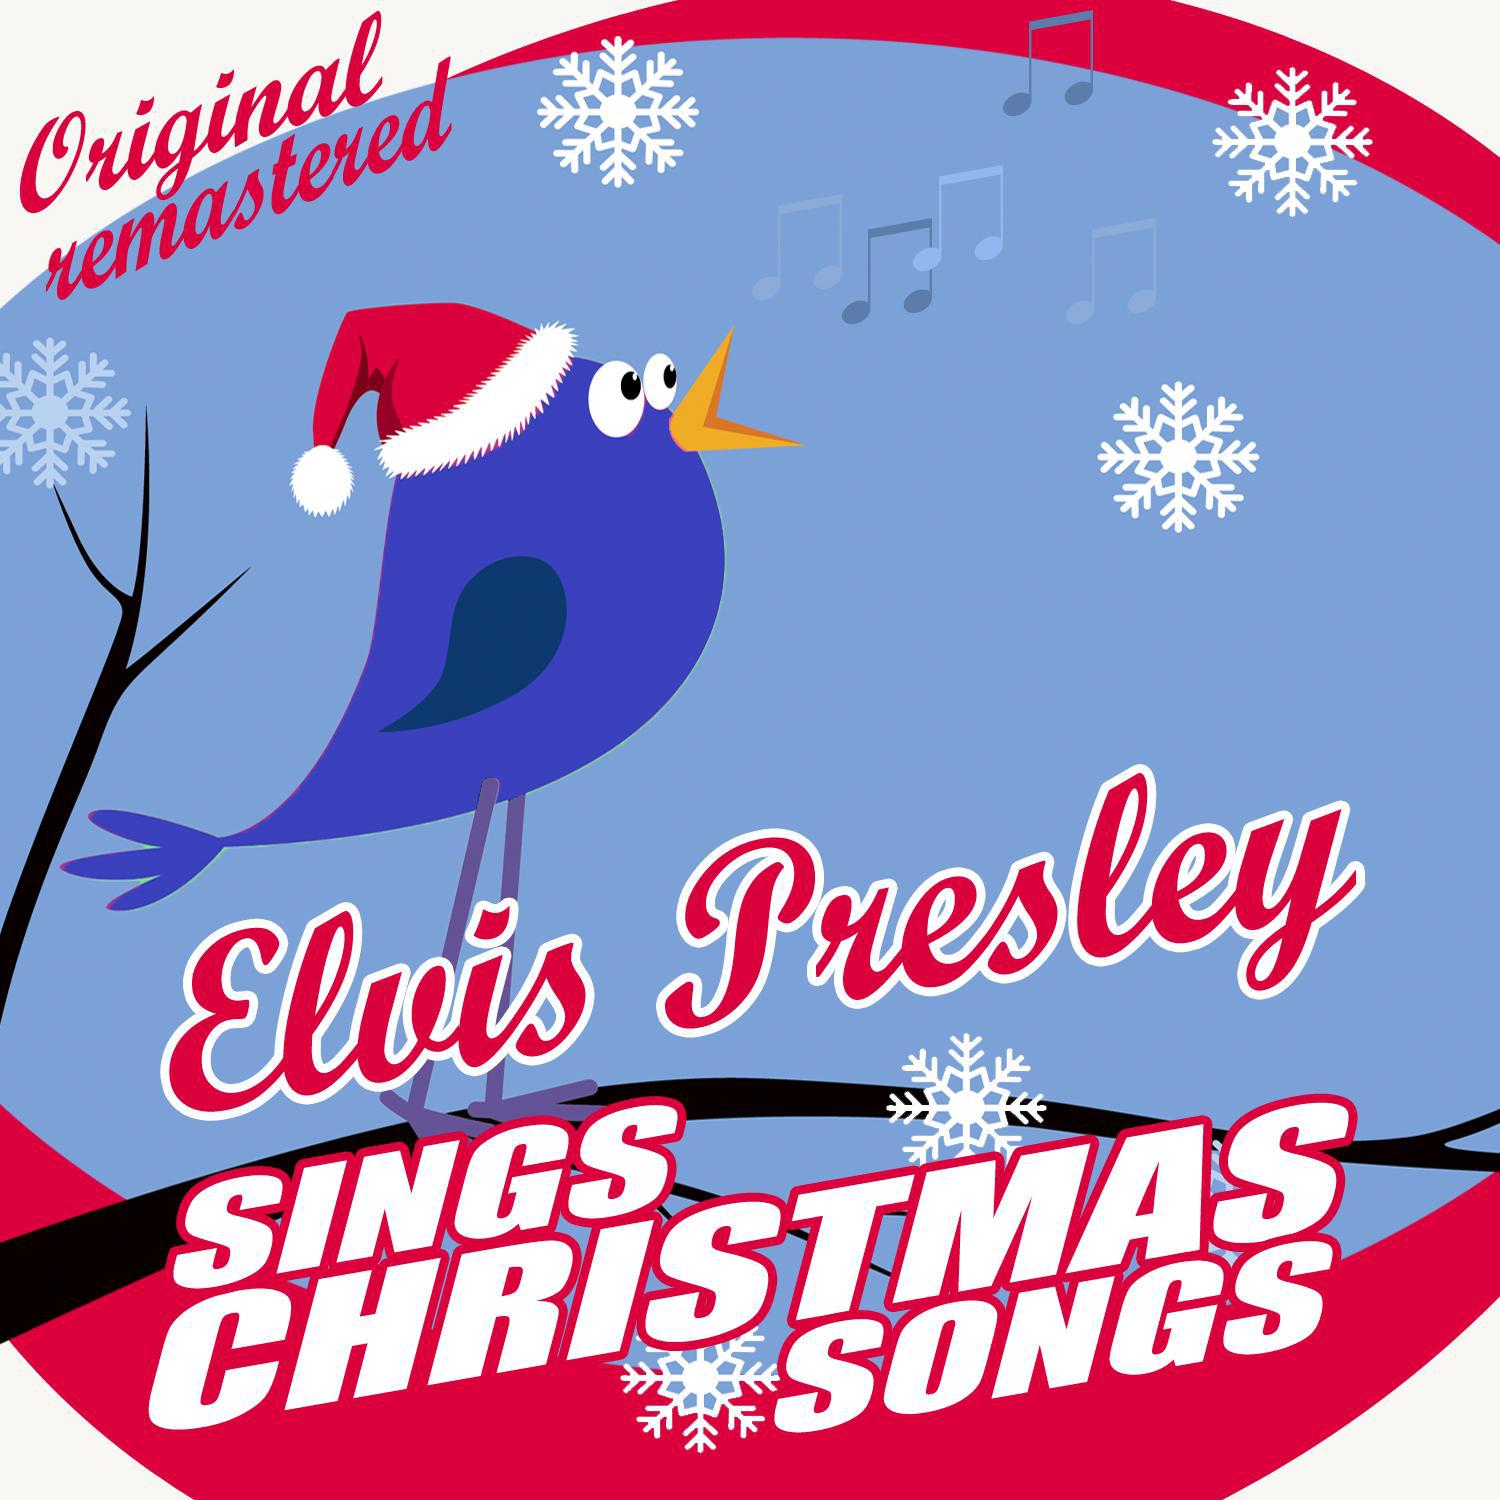 Elvis Presley Sings Christmas Songs专辑